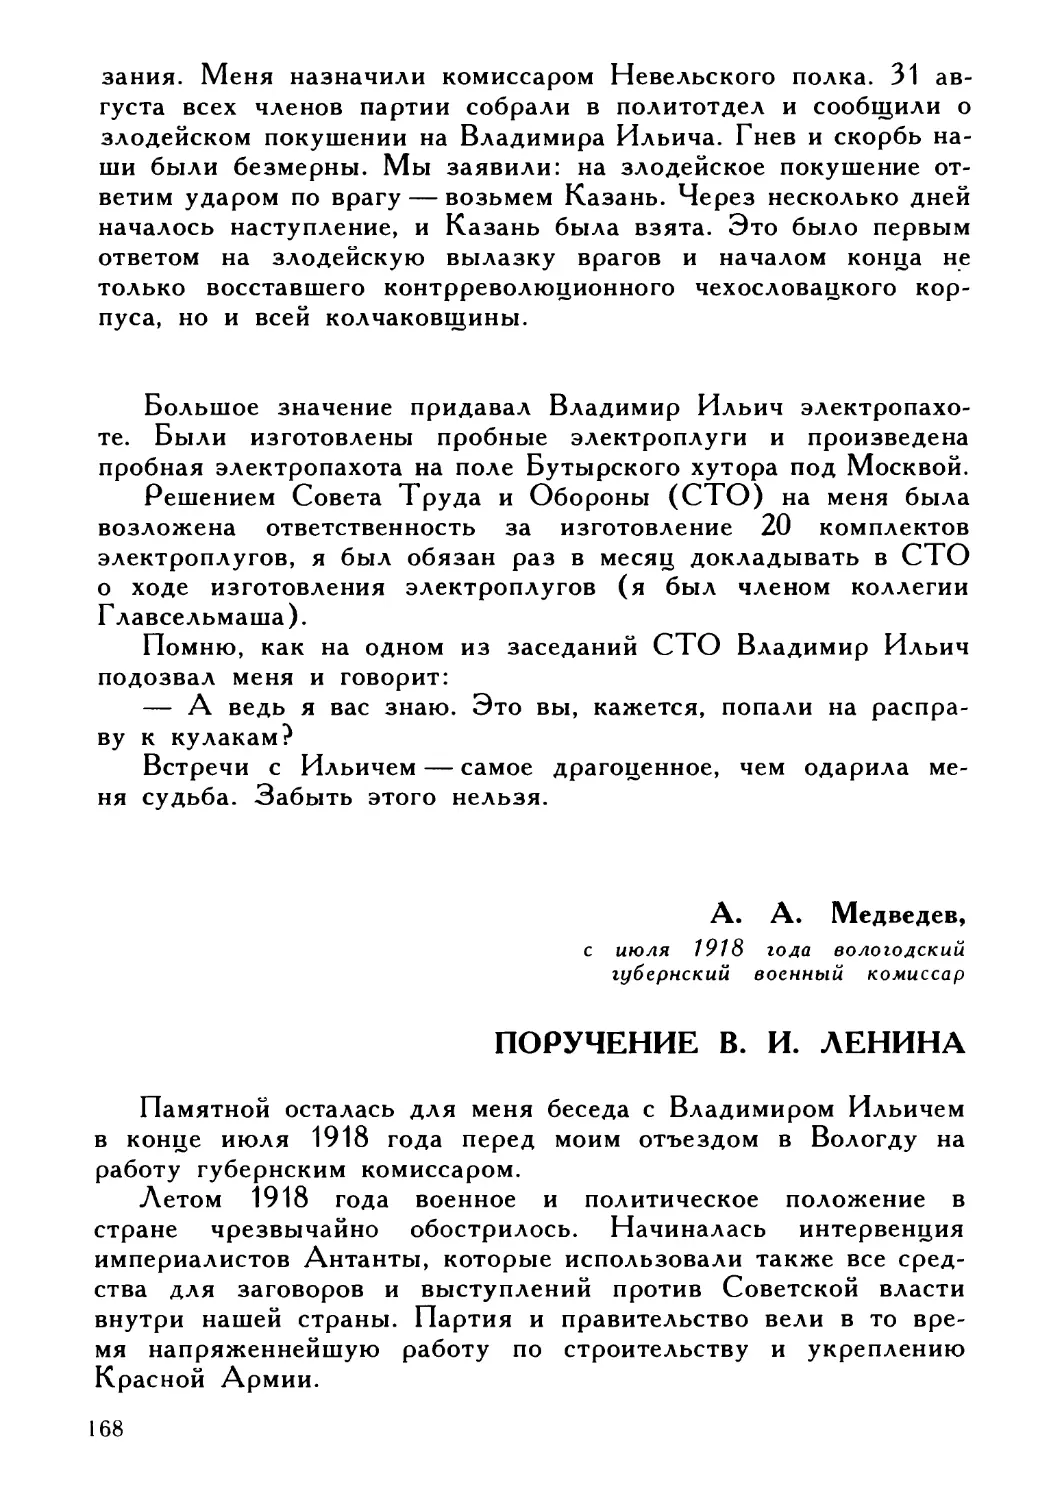 А. А. Медведев. Поручение В. И. Ленина